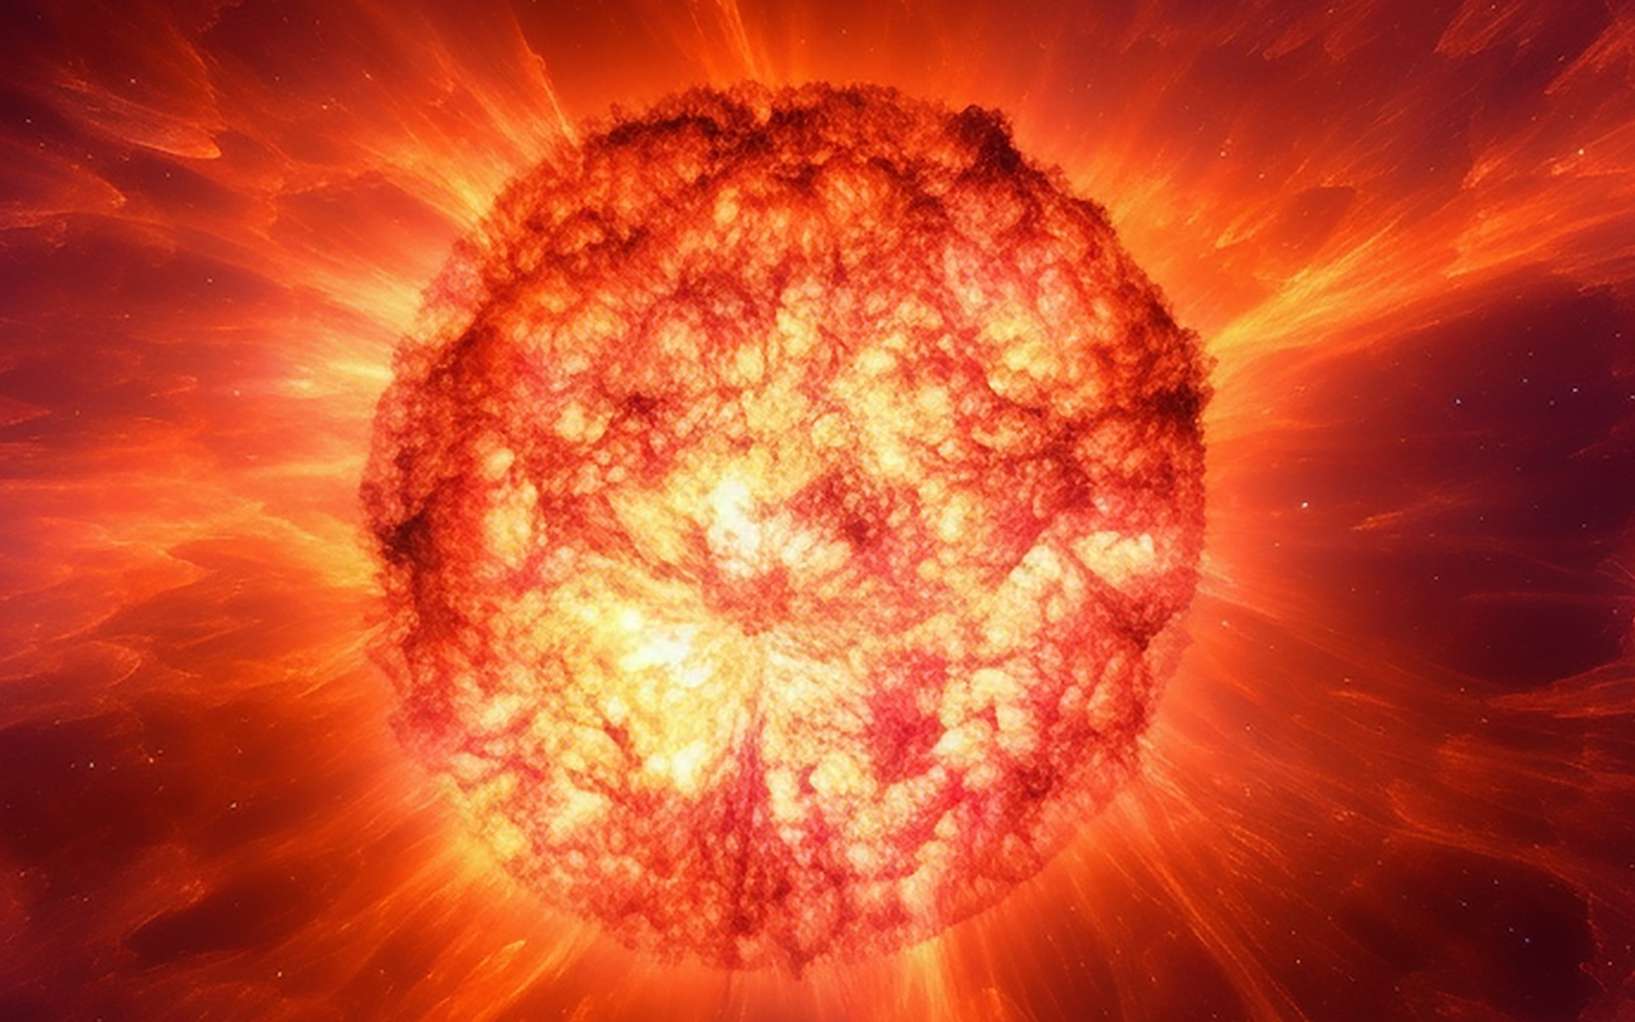 Une simulation remet en cause ce que l'on sait de Bételgeuse, l'étoile proche de nous qui peut exploser en supernova !